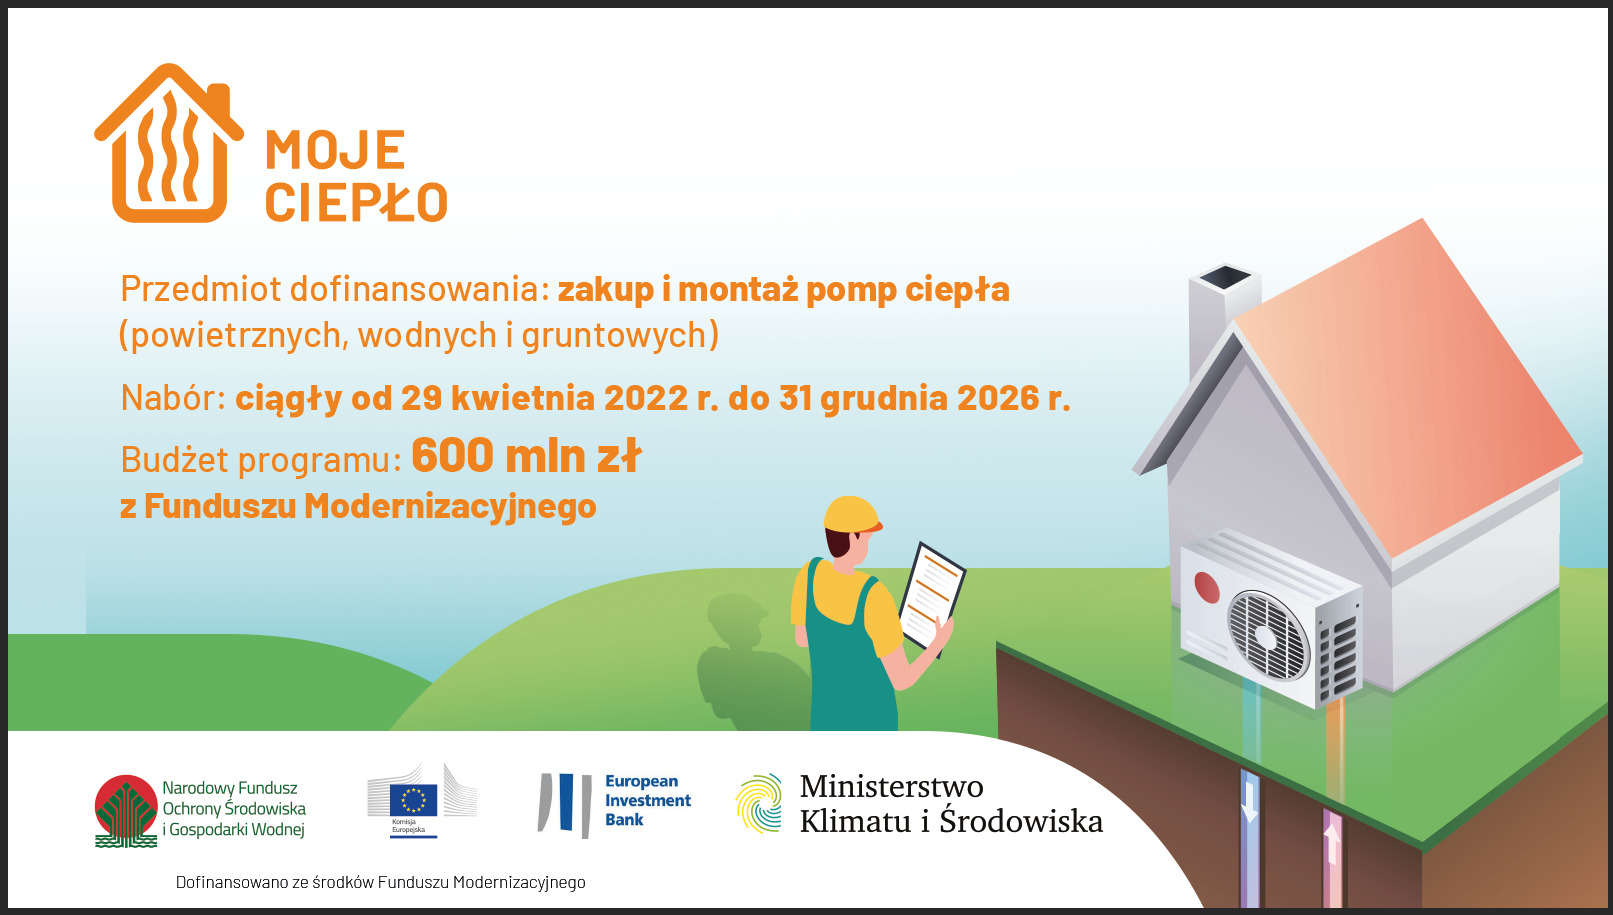 mkis program moje cieplo infografika 1 • ekoetos.pl